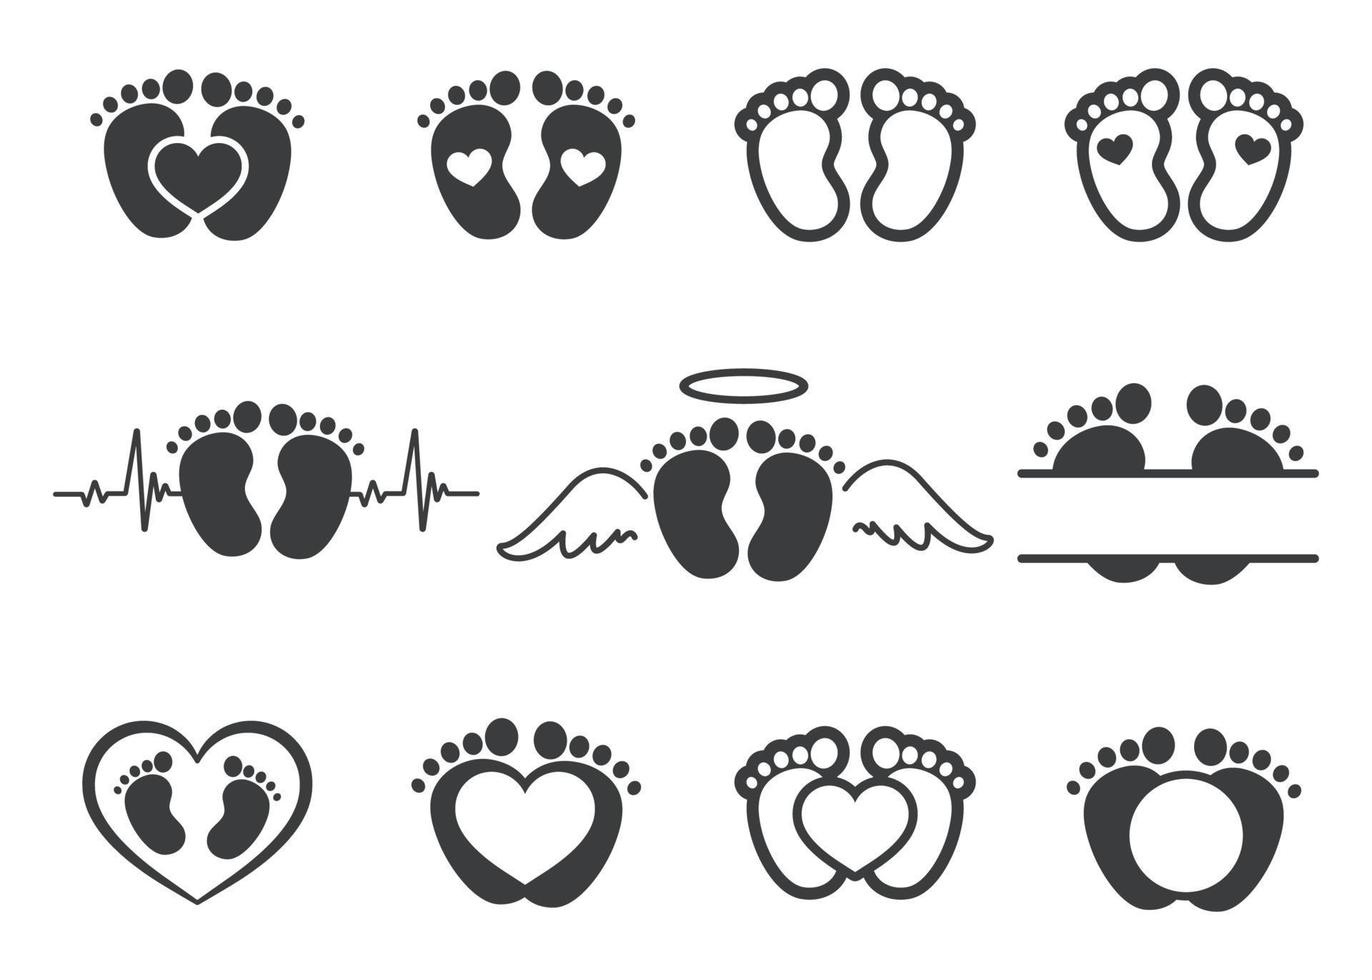 vectorontwerp van pasgeboren babyvoetafdrukken met hartvormen met ruimte voor het toevoegen van tekst. vector